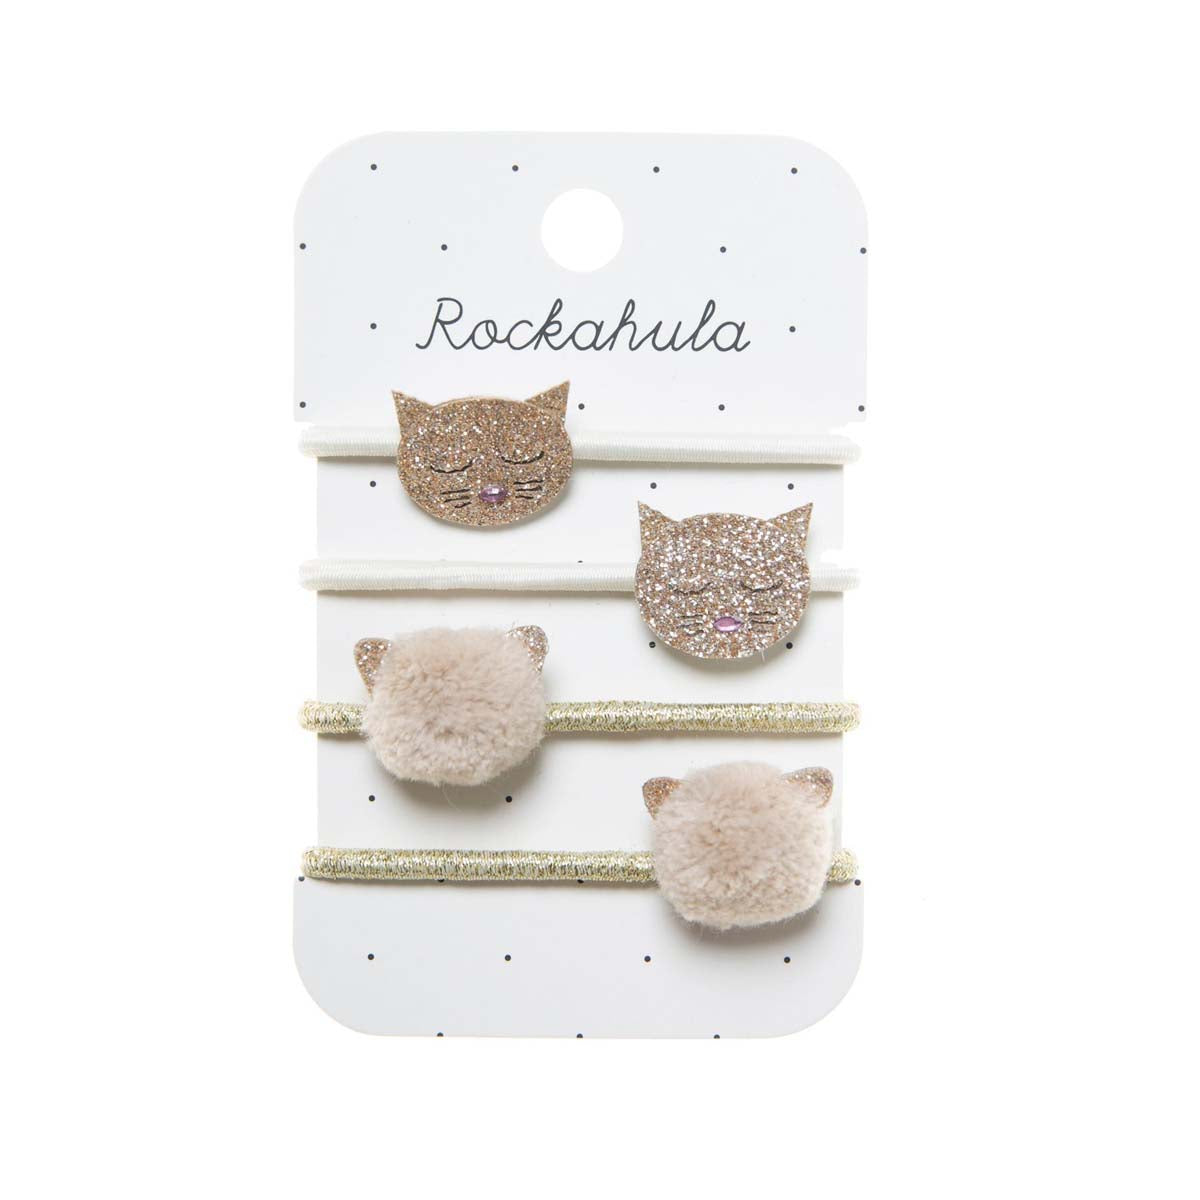 Cuteness overload met Rockahula’s bertie bee en daisy elastiekjes! De set bestaat uit 4 elastieken: twee goudkleurige elastieken met fluffy pompoms en twee witte elastieken met kattengezichtjes met glitters. VanZus